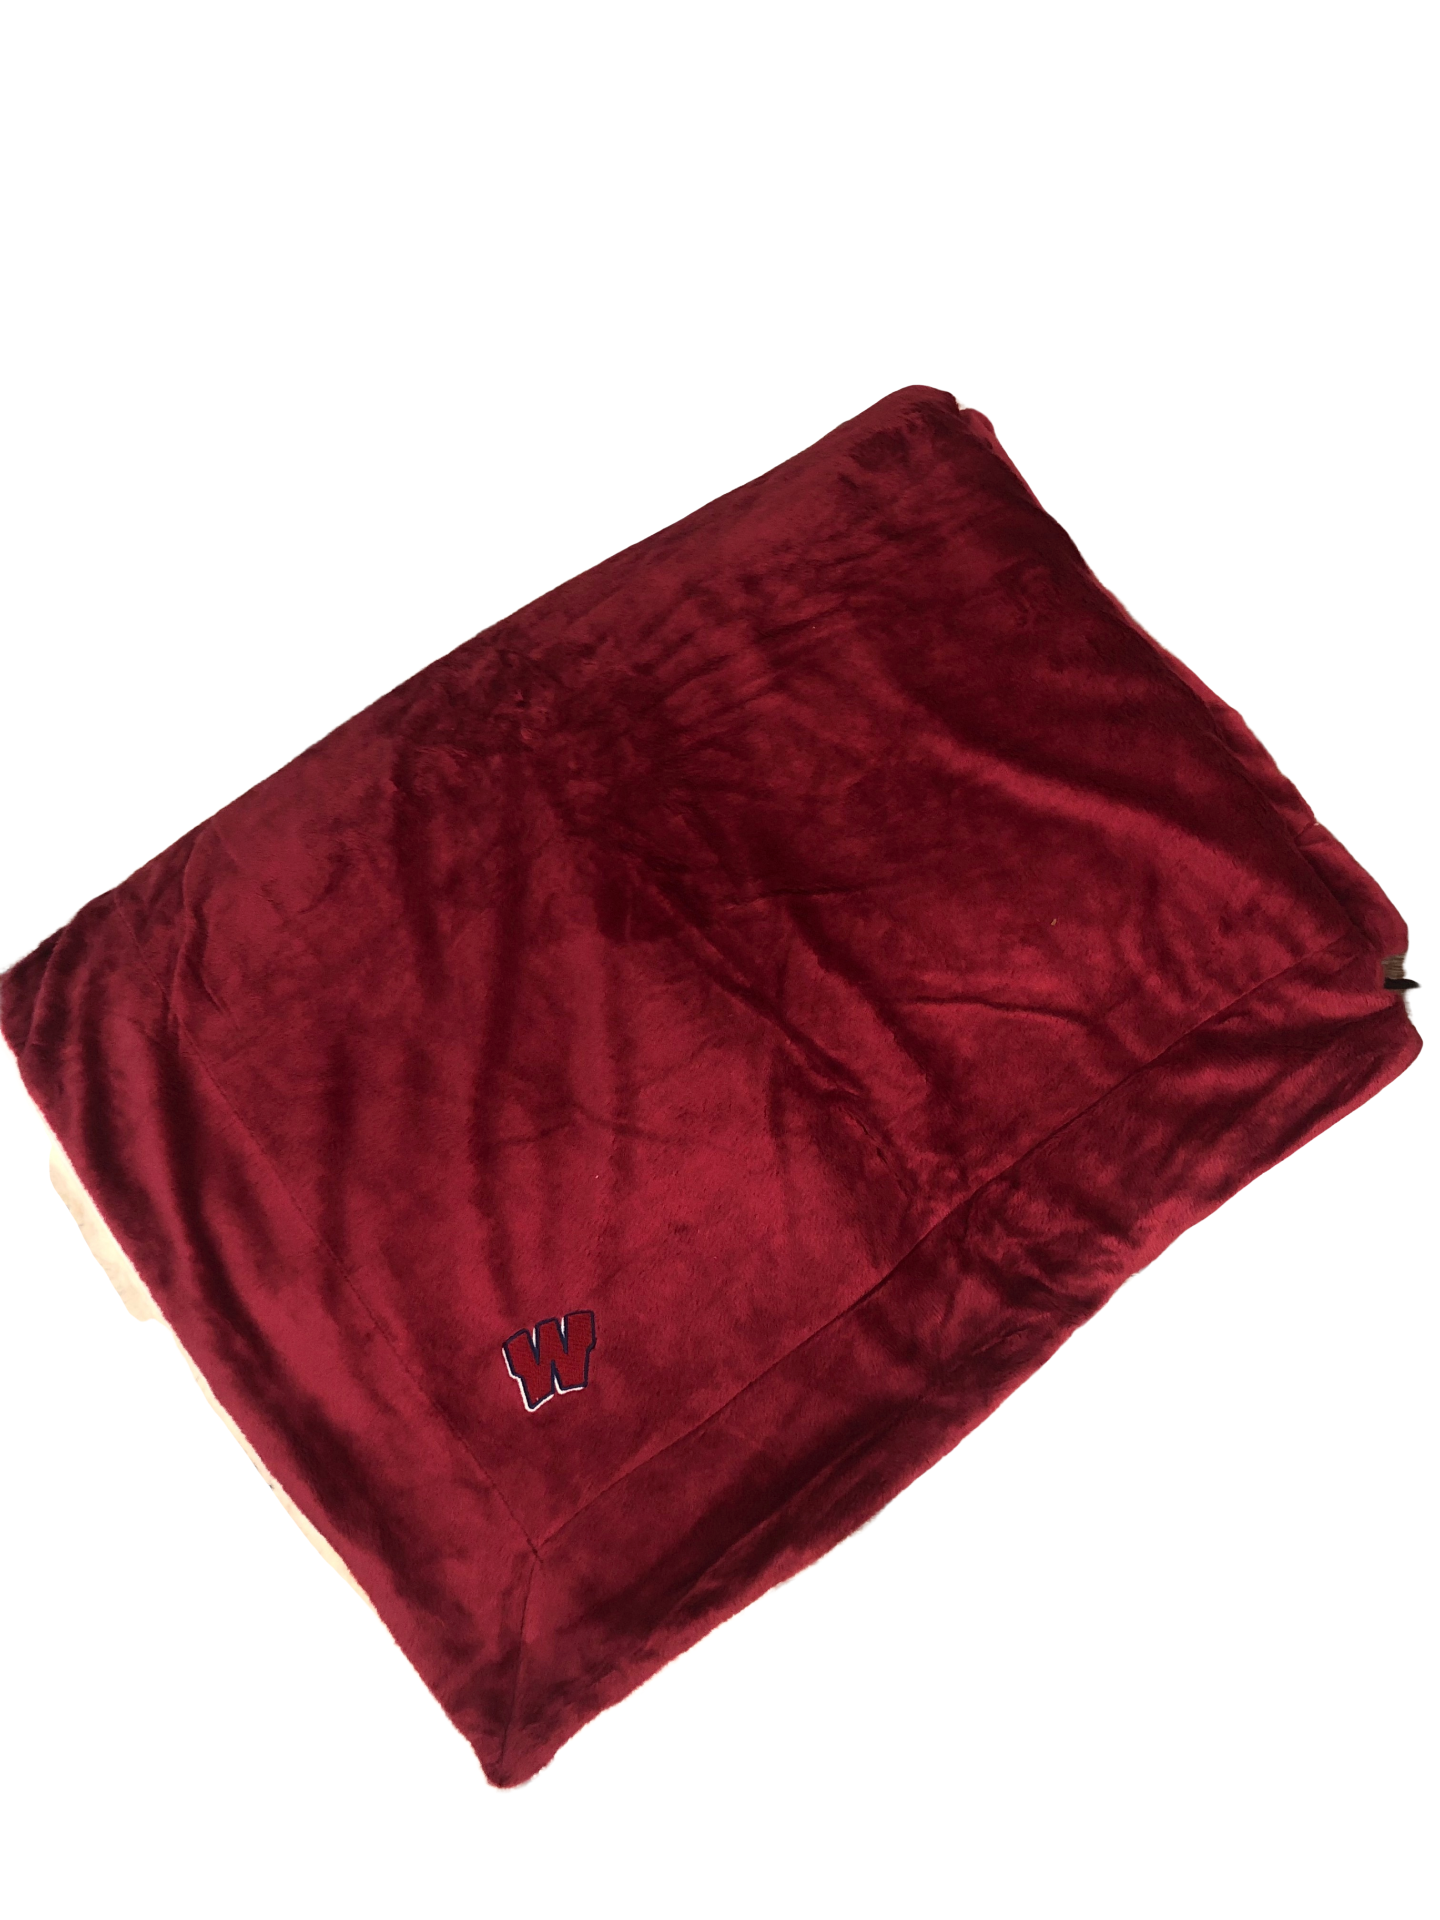 Minky/Sherpa Blanket